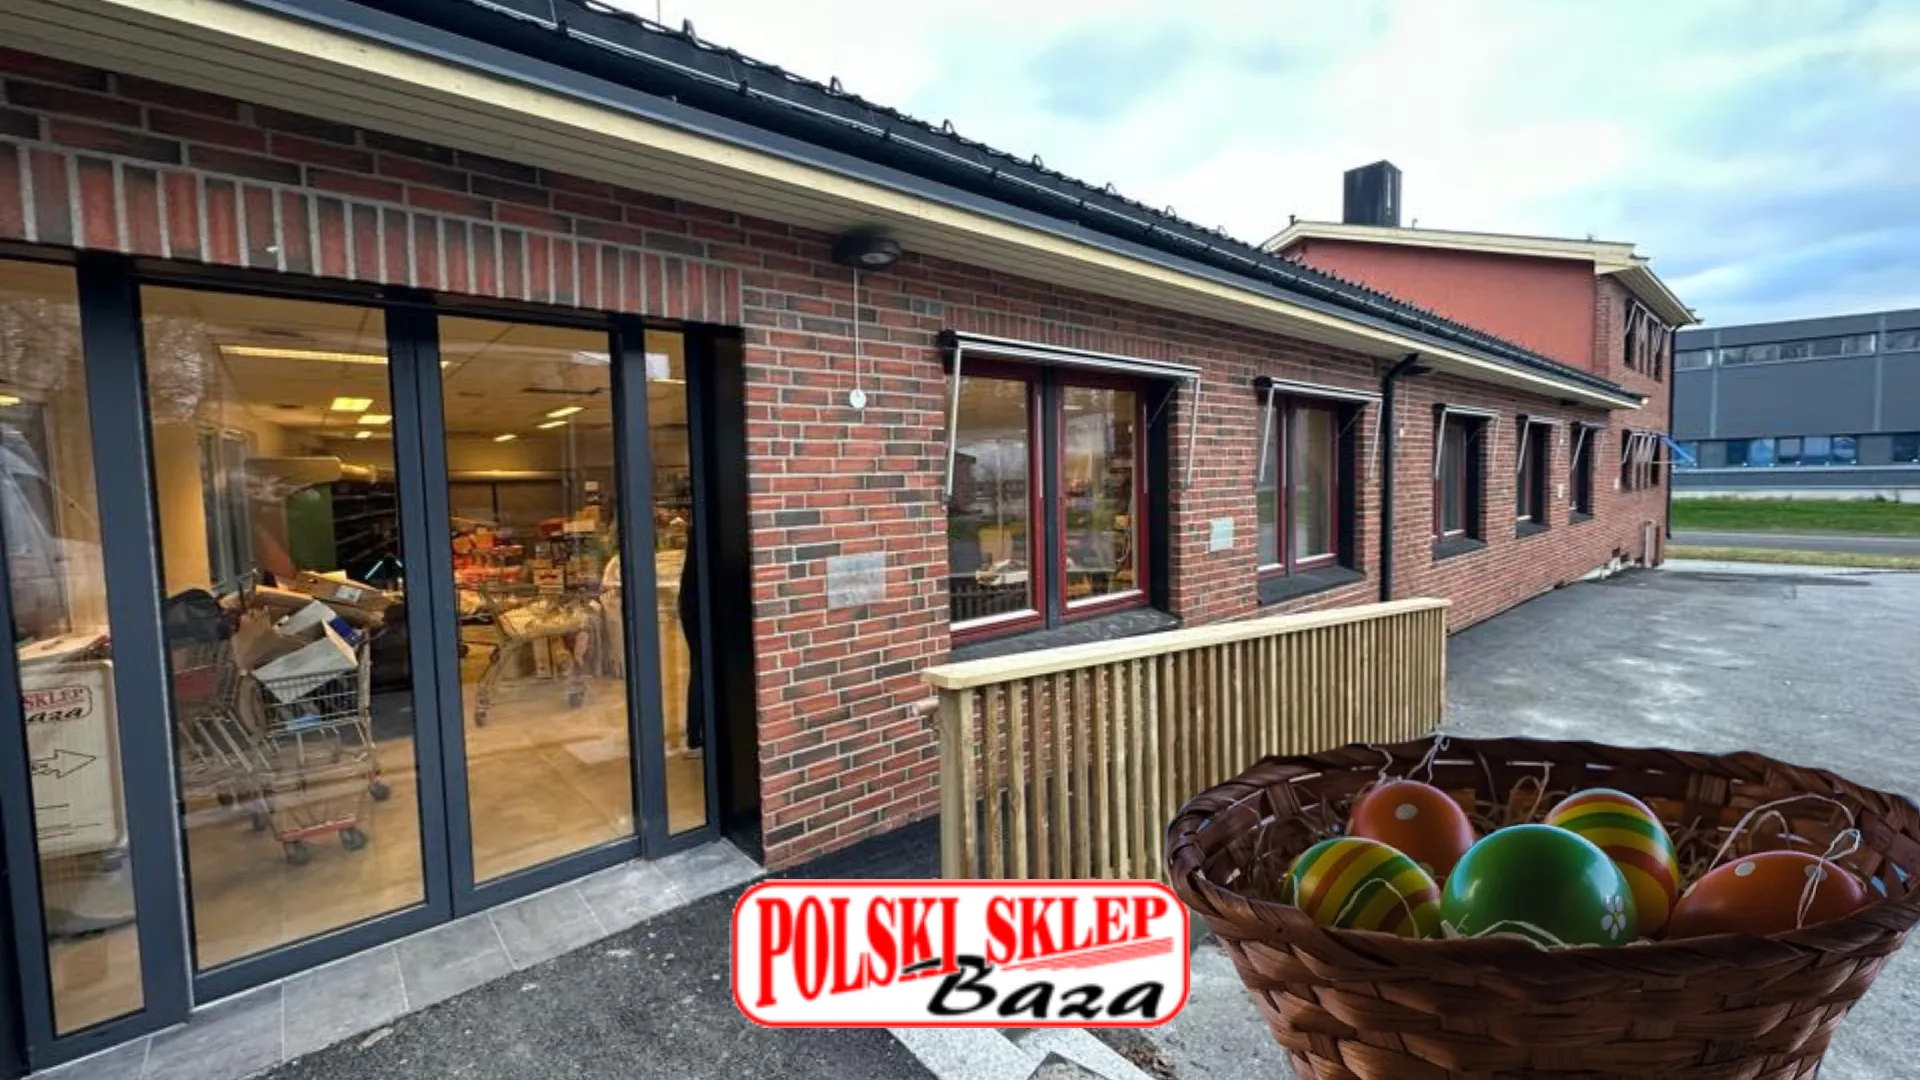 Norsko - Jak jsou obchody otevřené o státních svátcích? Polský obchod Baza-Nabídka potravin v Oslu a Drammenu